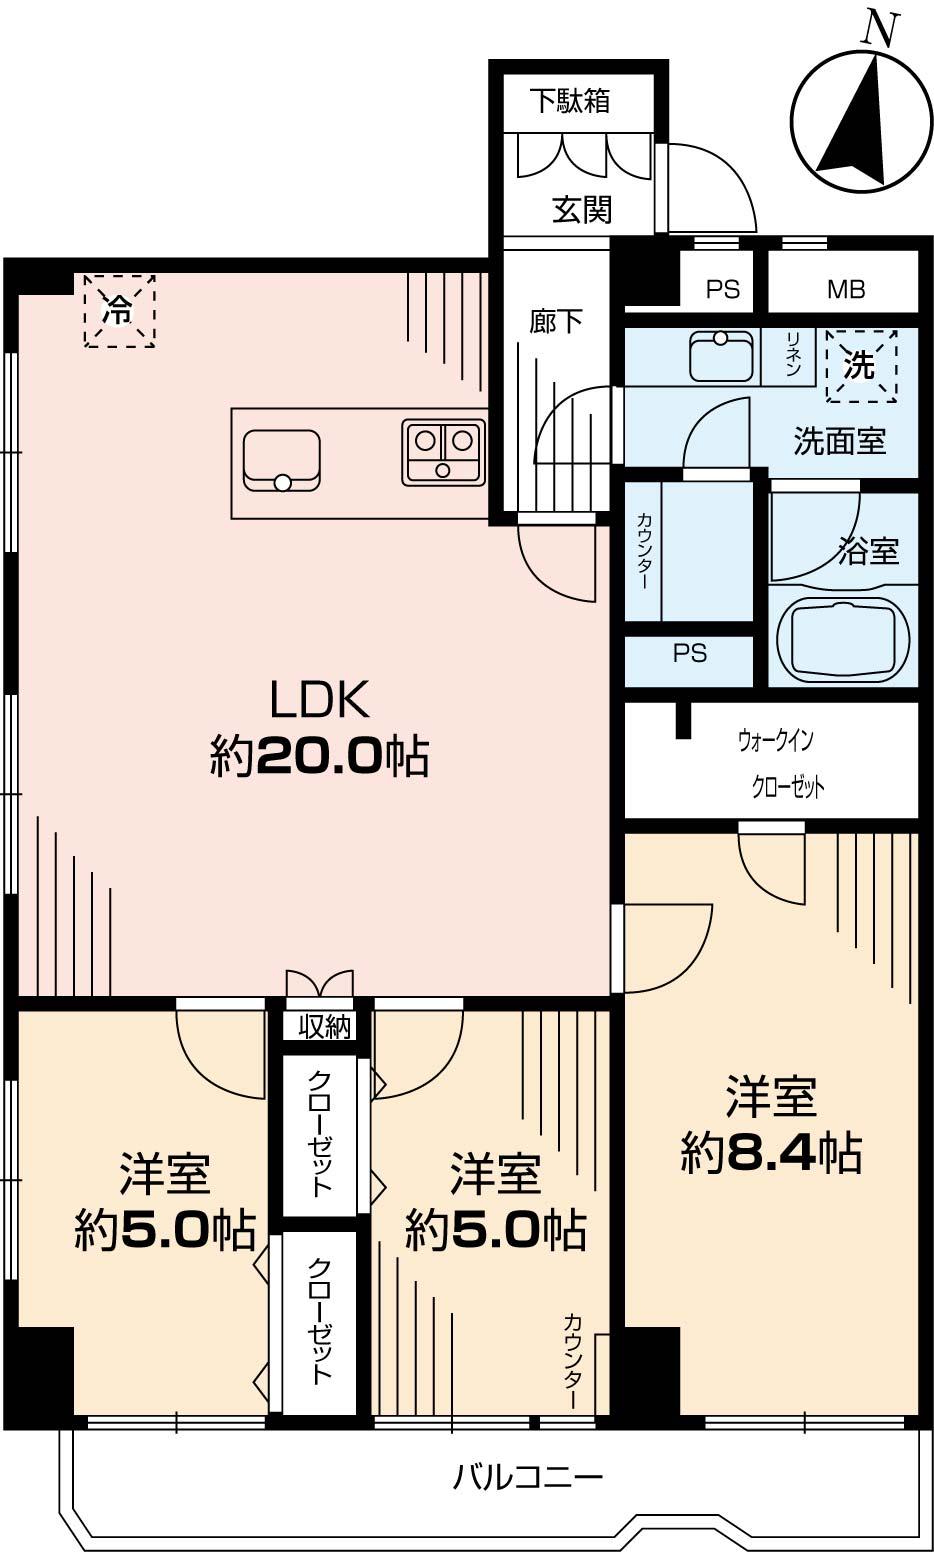 Floor plan. 3LDK, Price 59,800,000 yen, Occupied area 85.14 sq m , Balcony area 7.61 sq m indoor (December 2013) Shooting